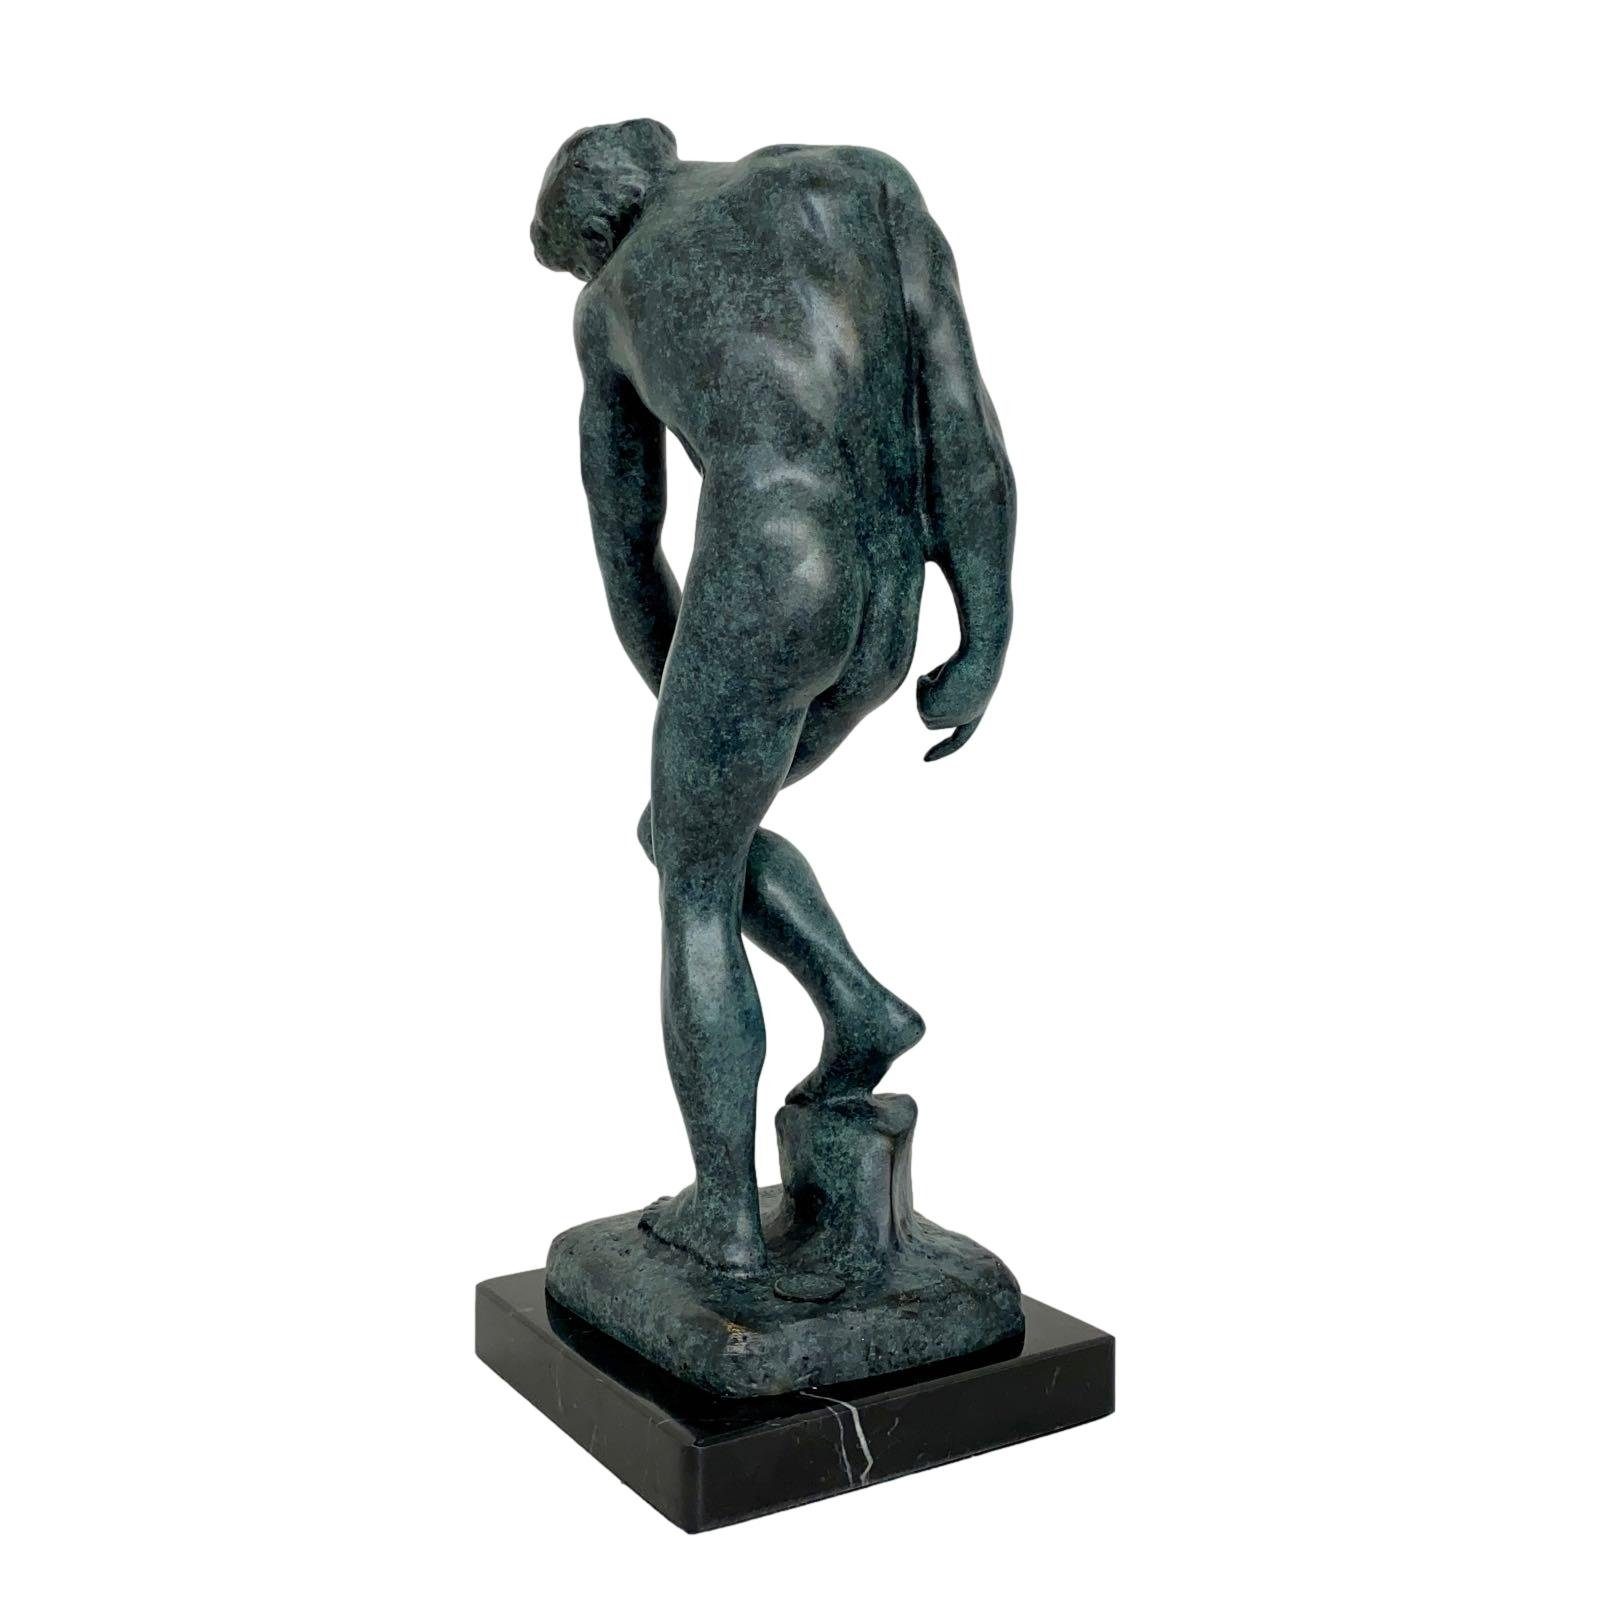 Kopie nach Figur Aubaho Skulptur Statue Repl 30cm Bronzeskulptur Adam Rodin Antik-Stil